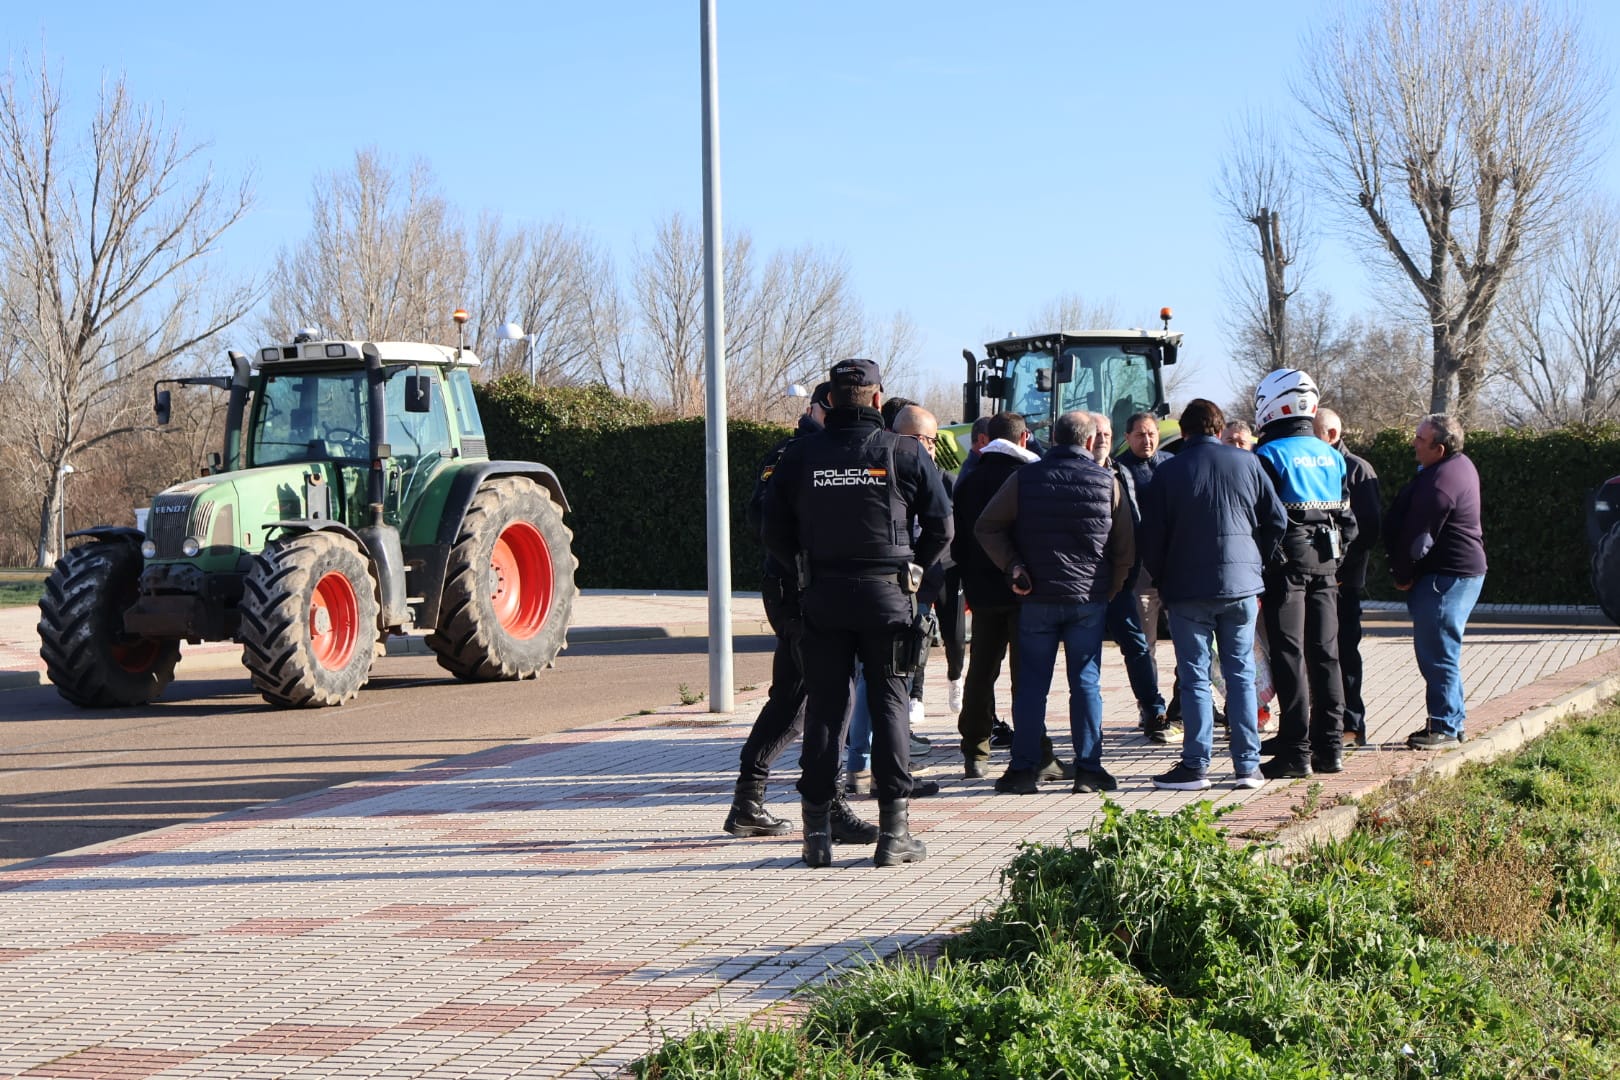 Protesta de los agricultores y ganaderos en Salamanca, viernes, 2 de febrero. Fotos Andrea M (17)